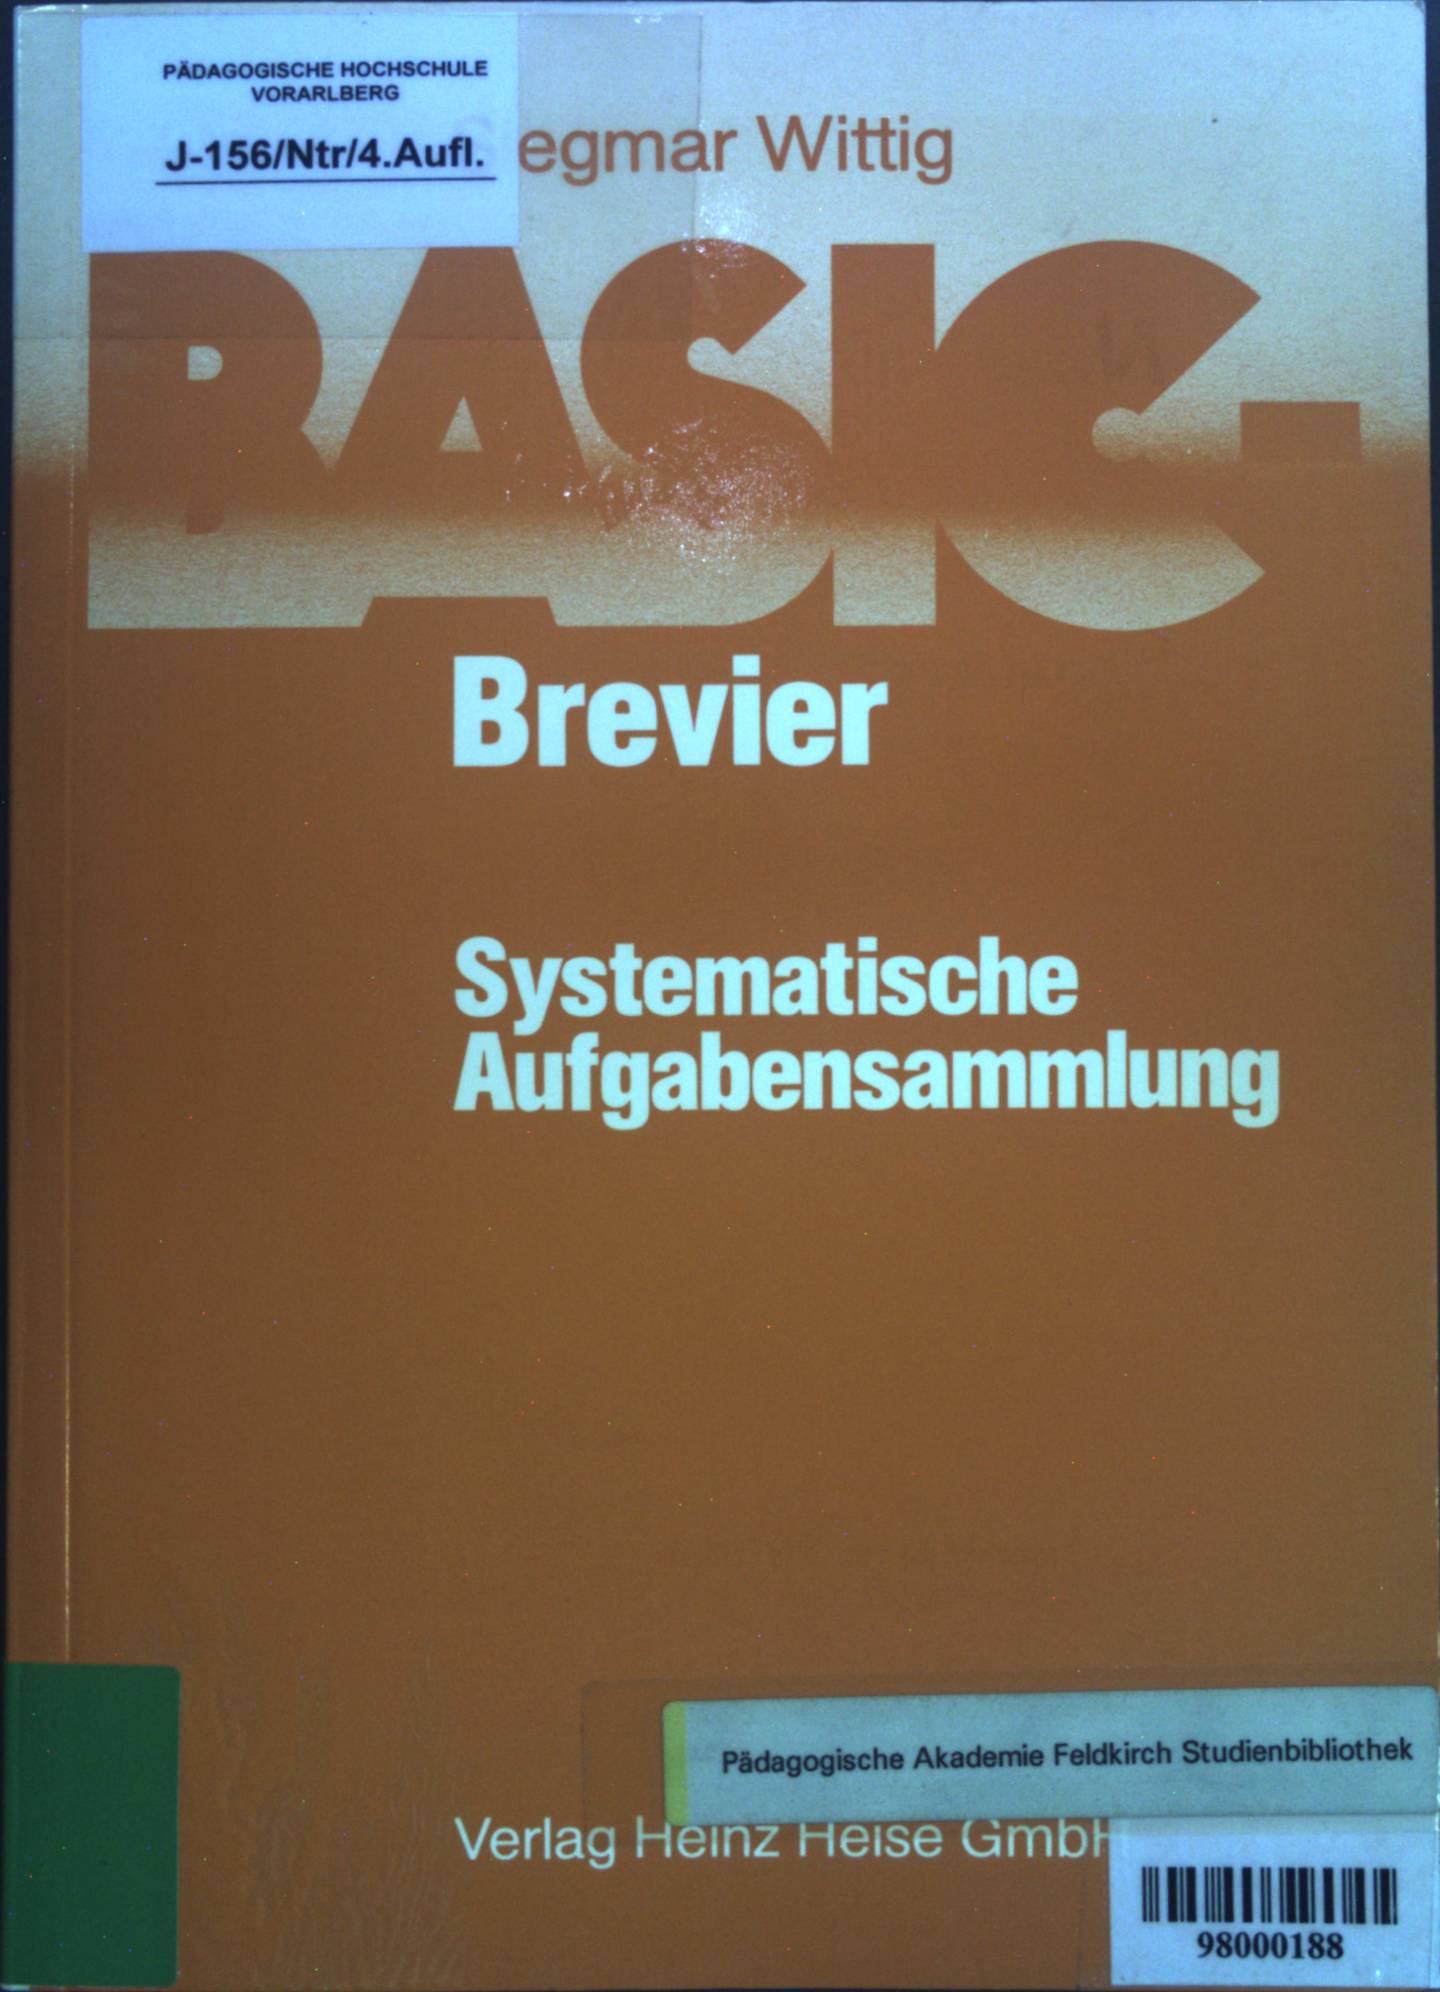 BASIC-Brevier; Systematische Aufgabensammlung : 207 Aufgaben mit kommentierten Lösungsprogrammen u. zahlr. Lösungsvarianten.  4. Aufl. - Wittig, Siegmar